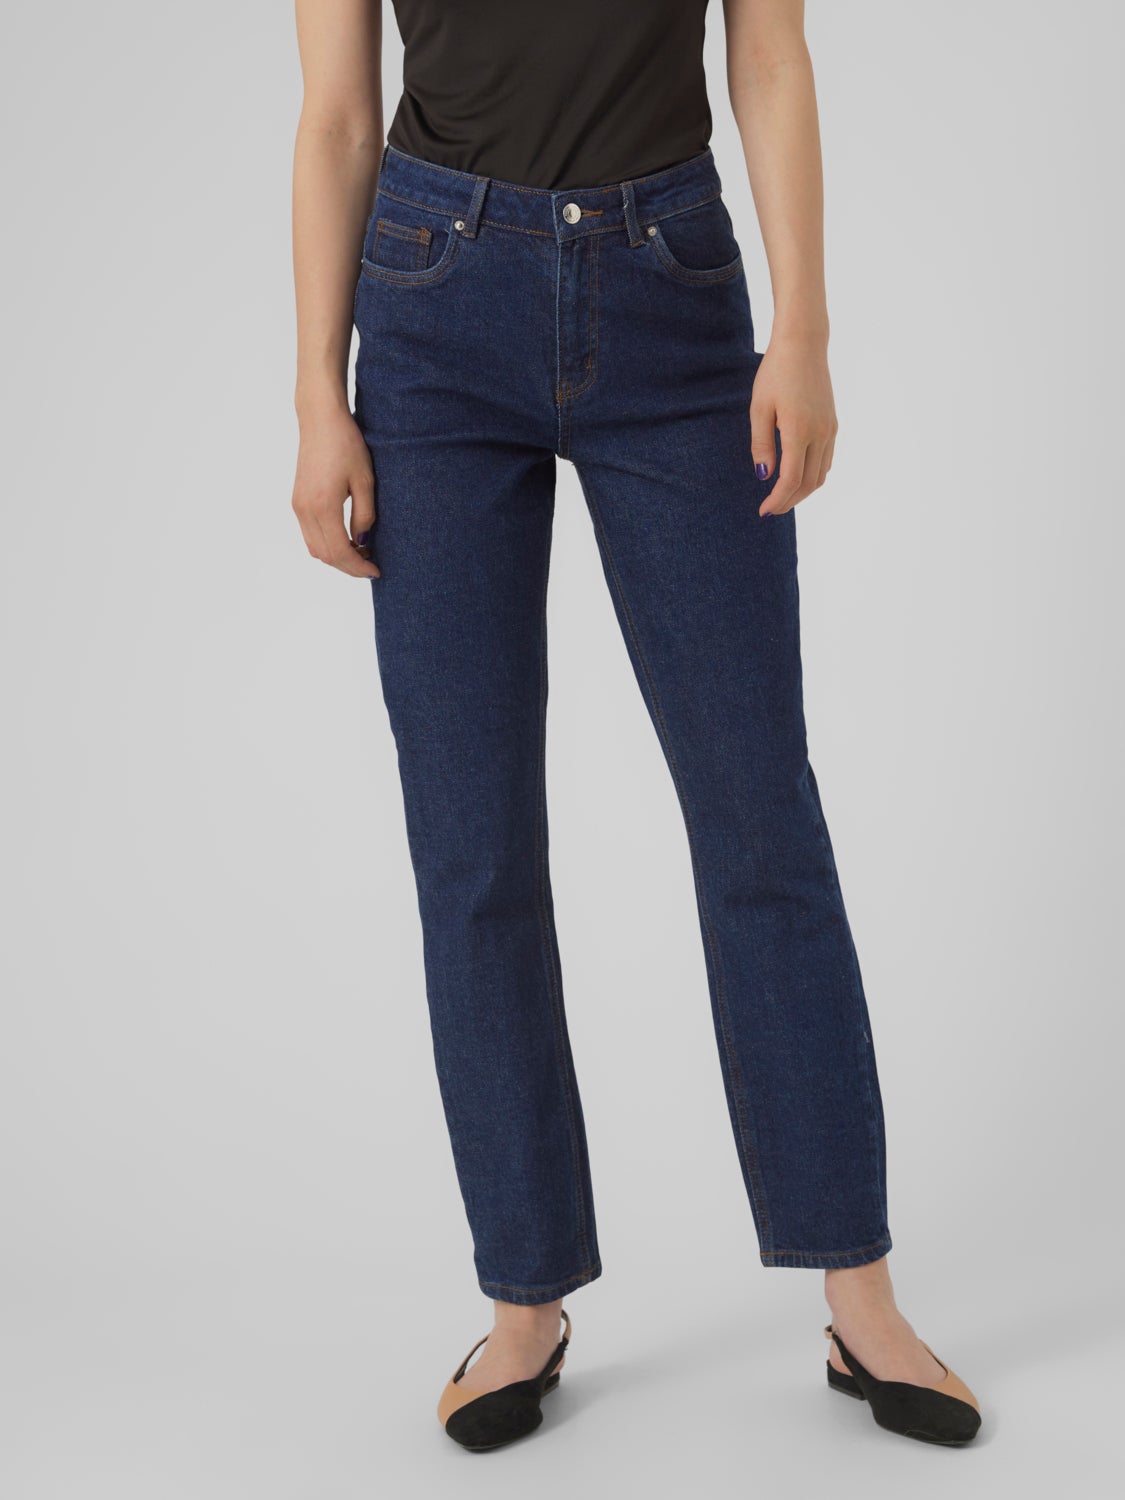 Mode Spijkerbroeken Slim jeans Glücksmoment Gl\u00fccksmoment Slim jeans blauw casual uitstraling 